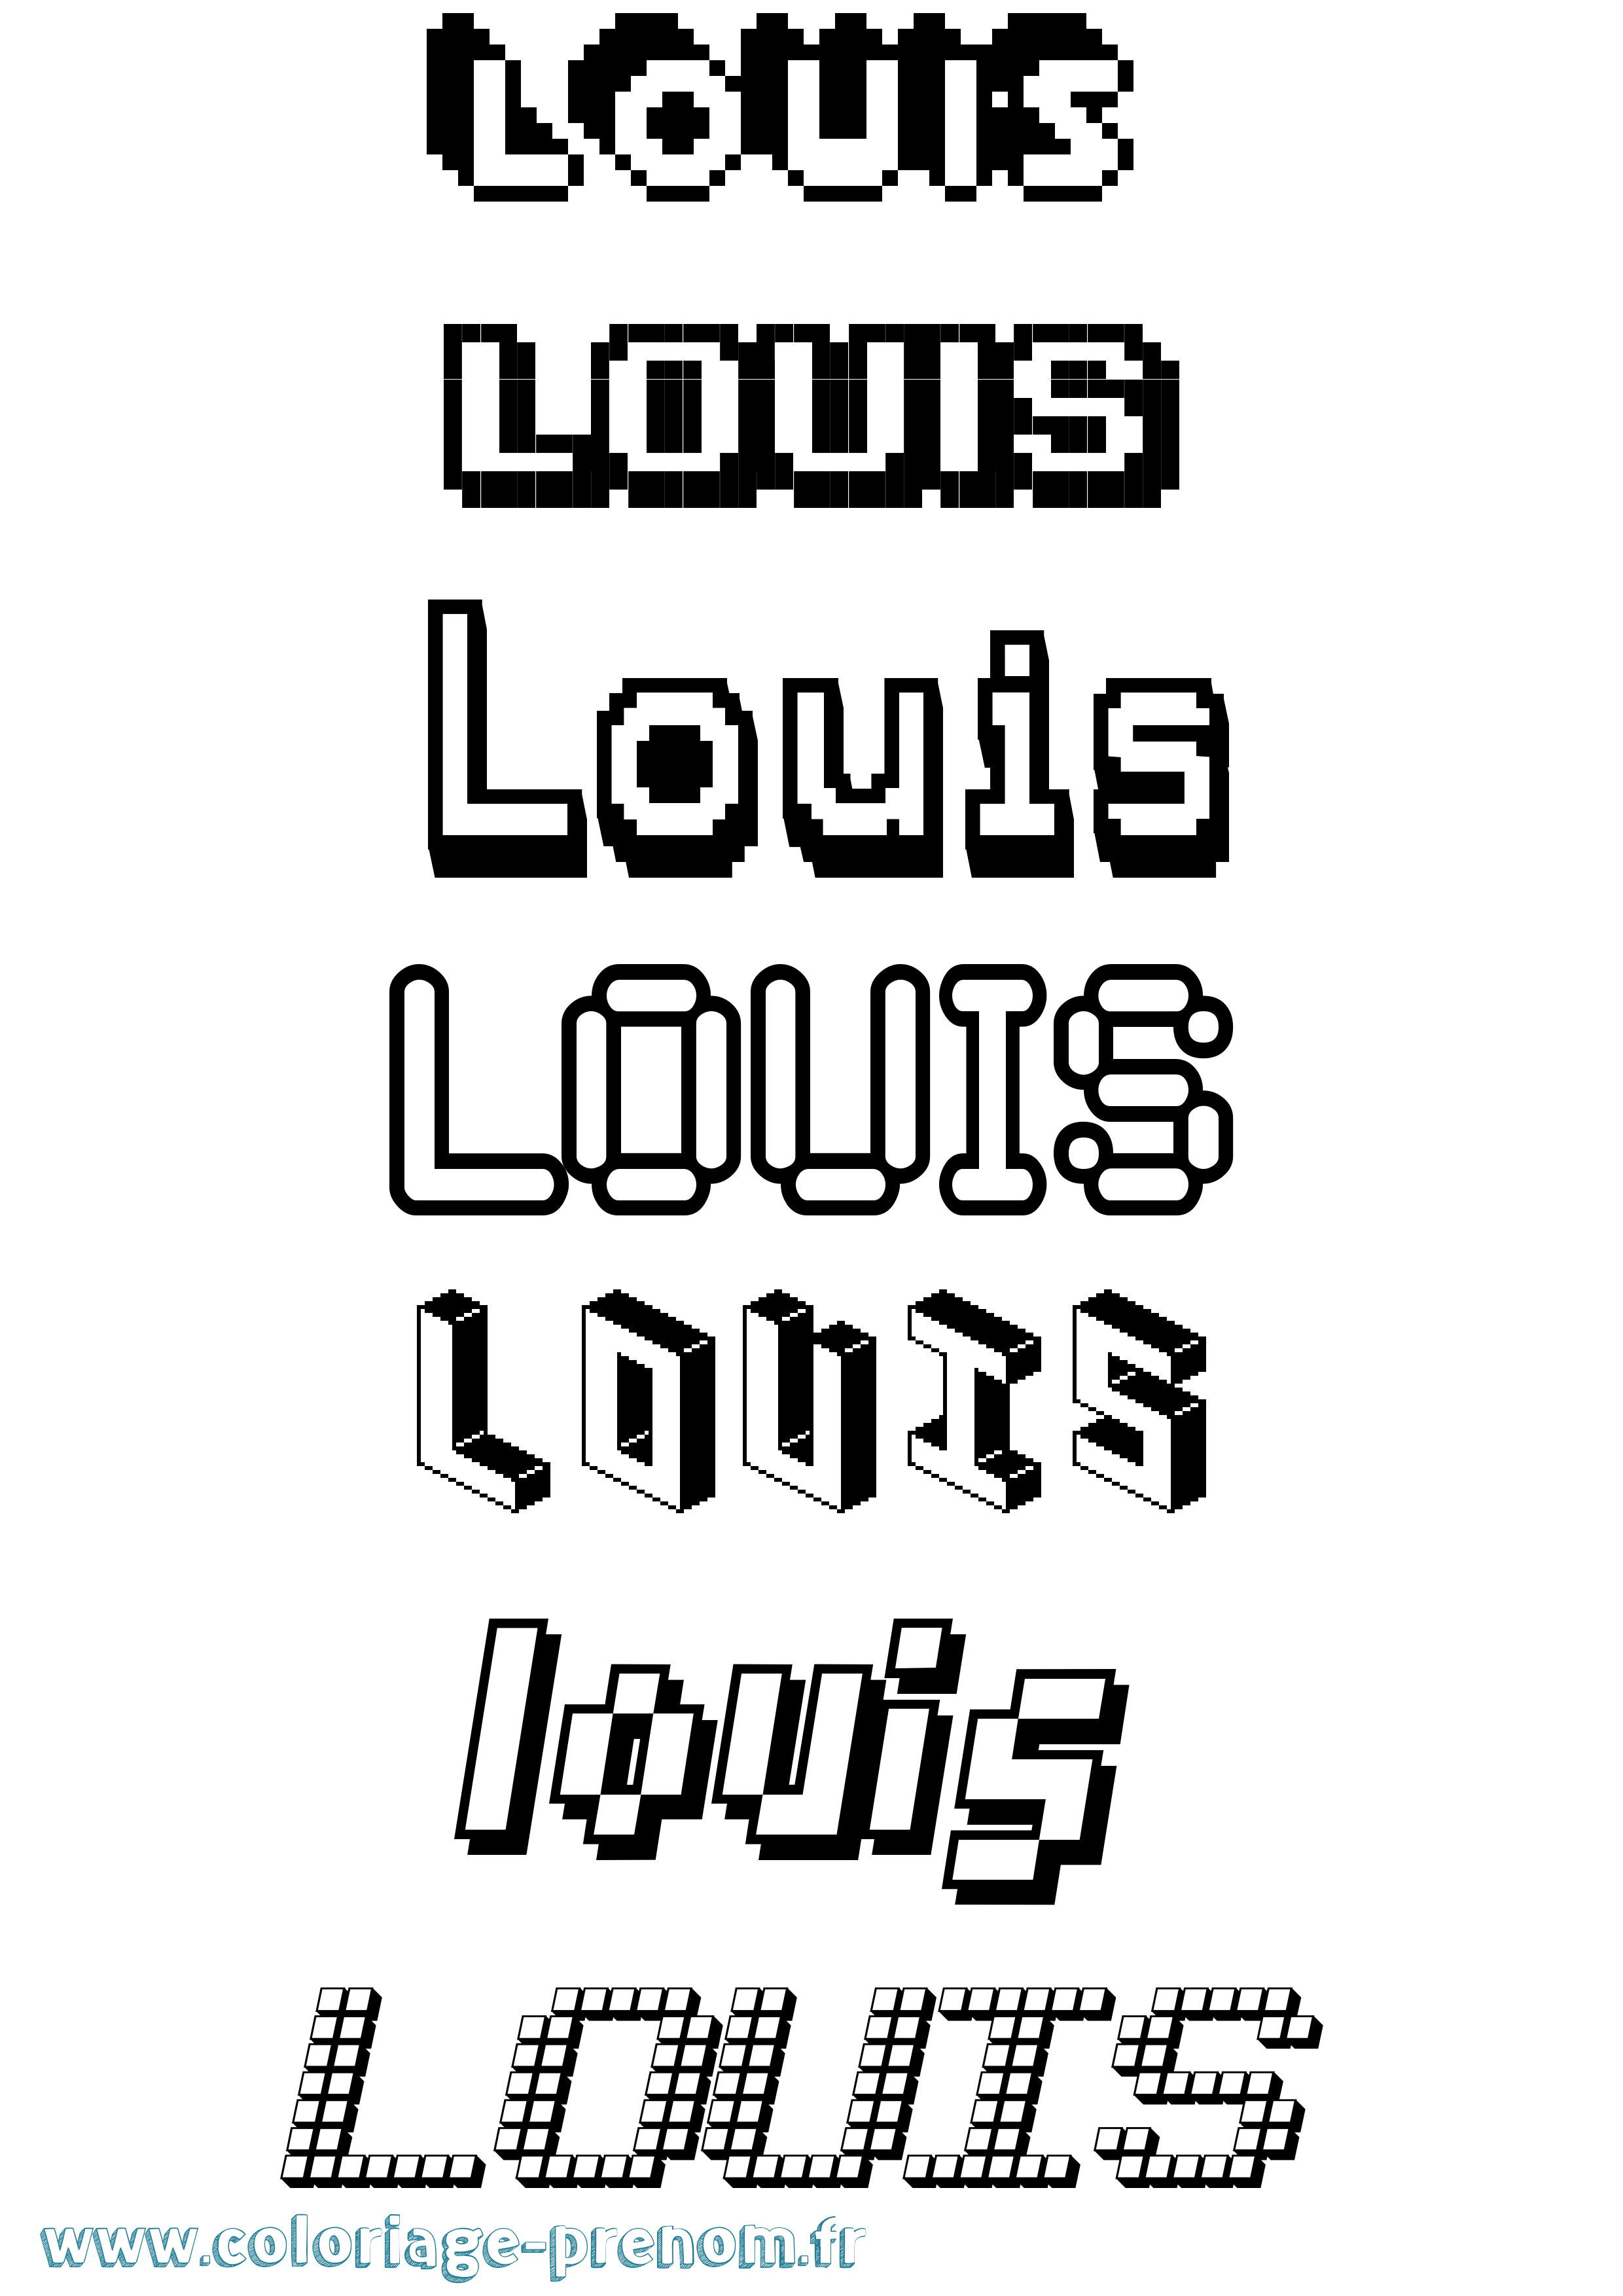 Coloriage prénom Louis Pixel